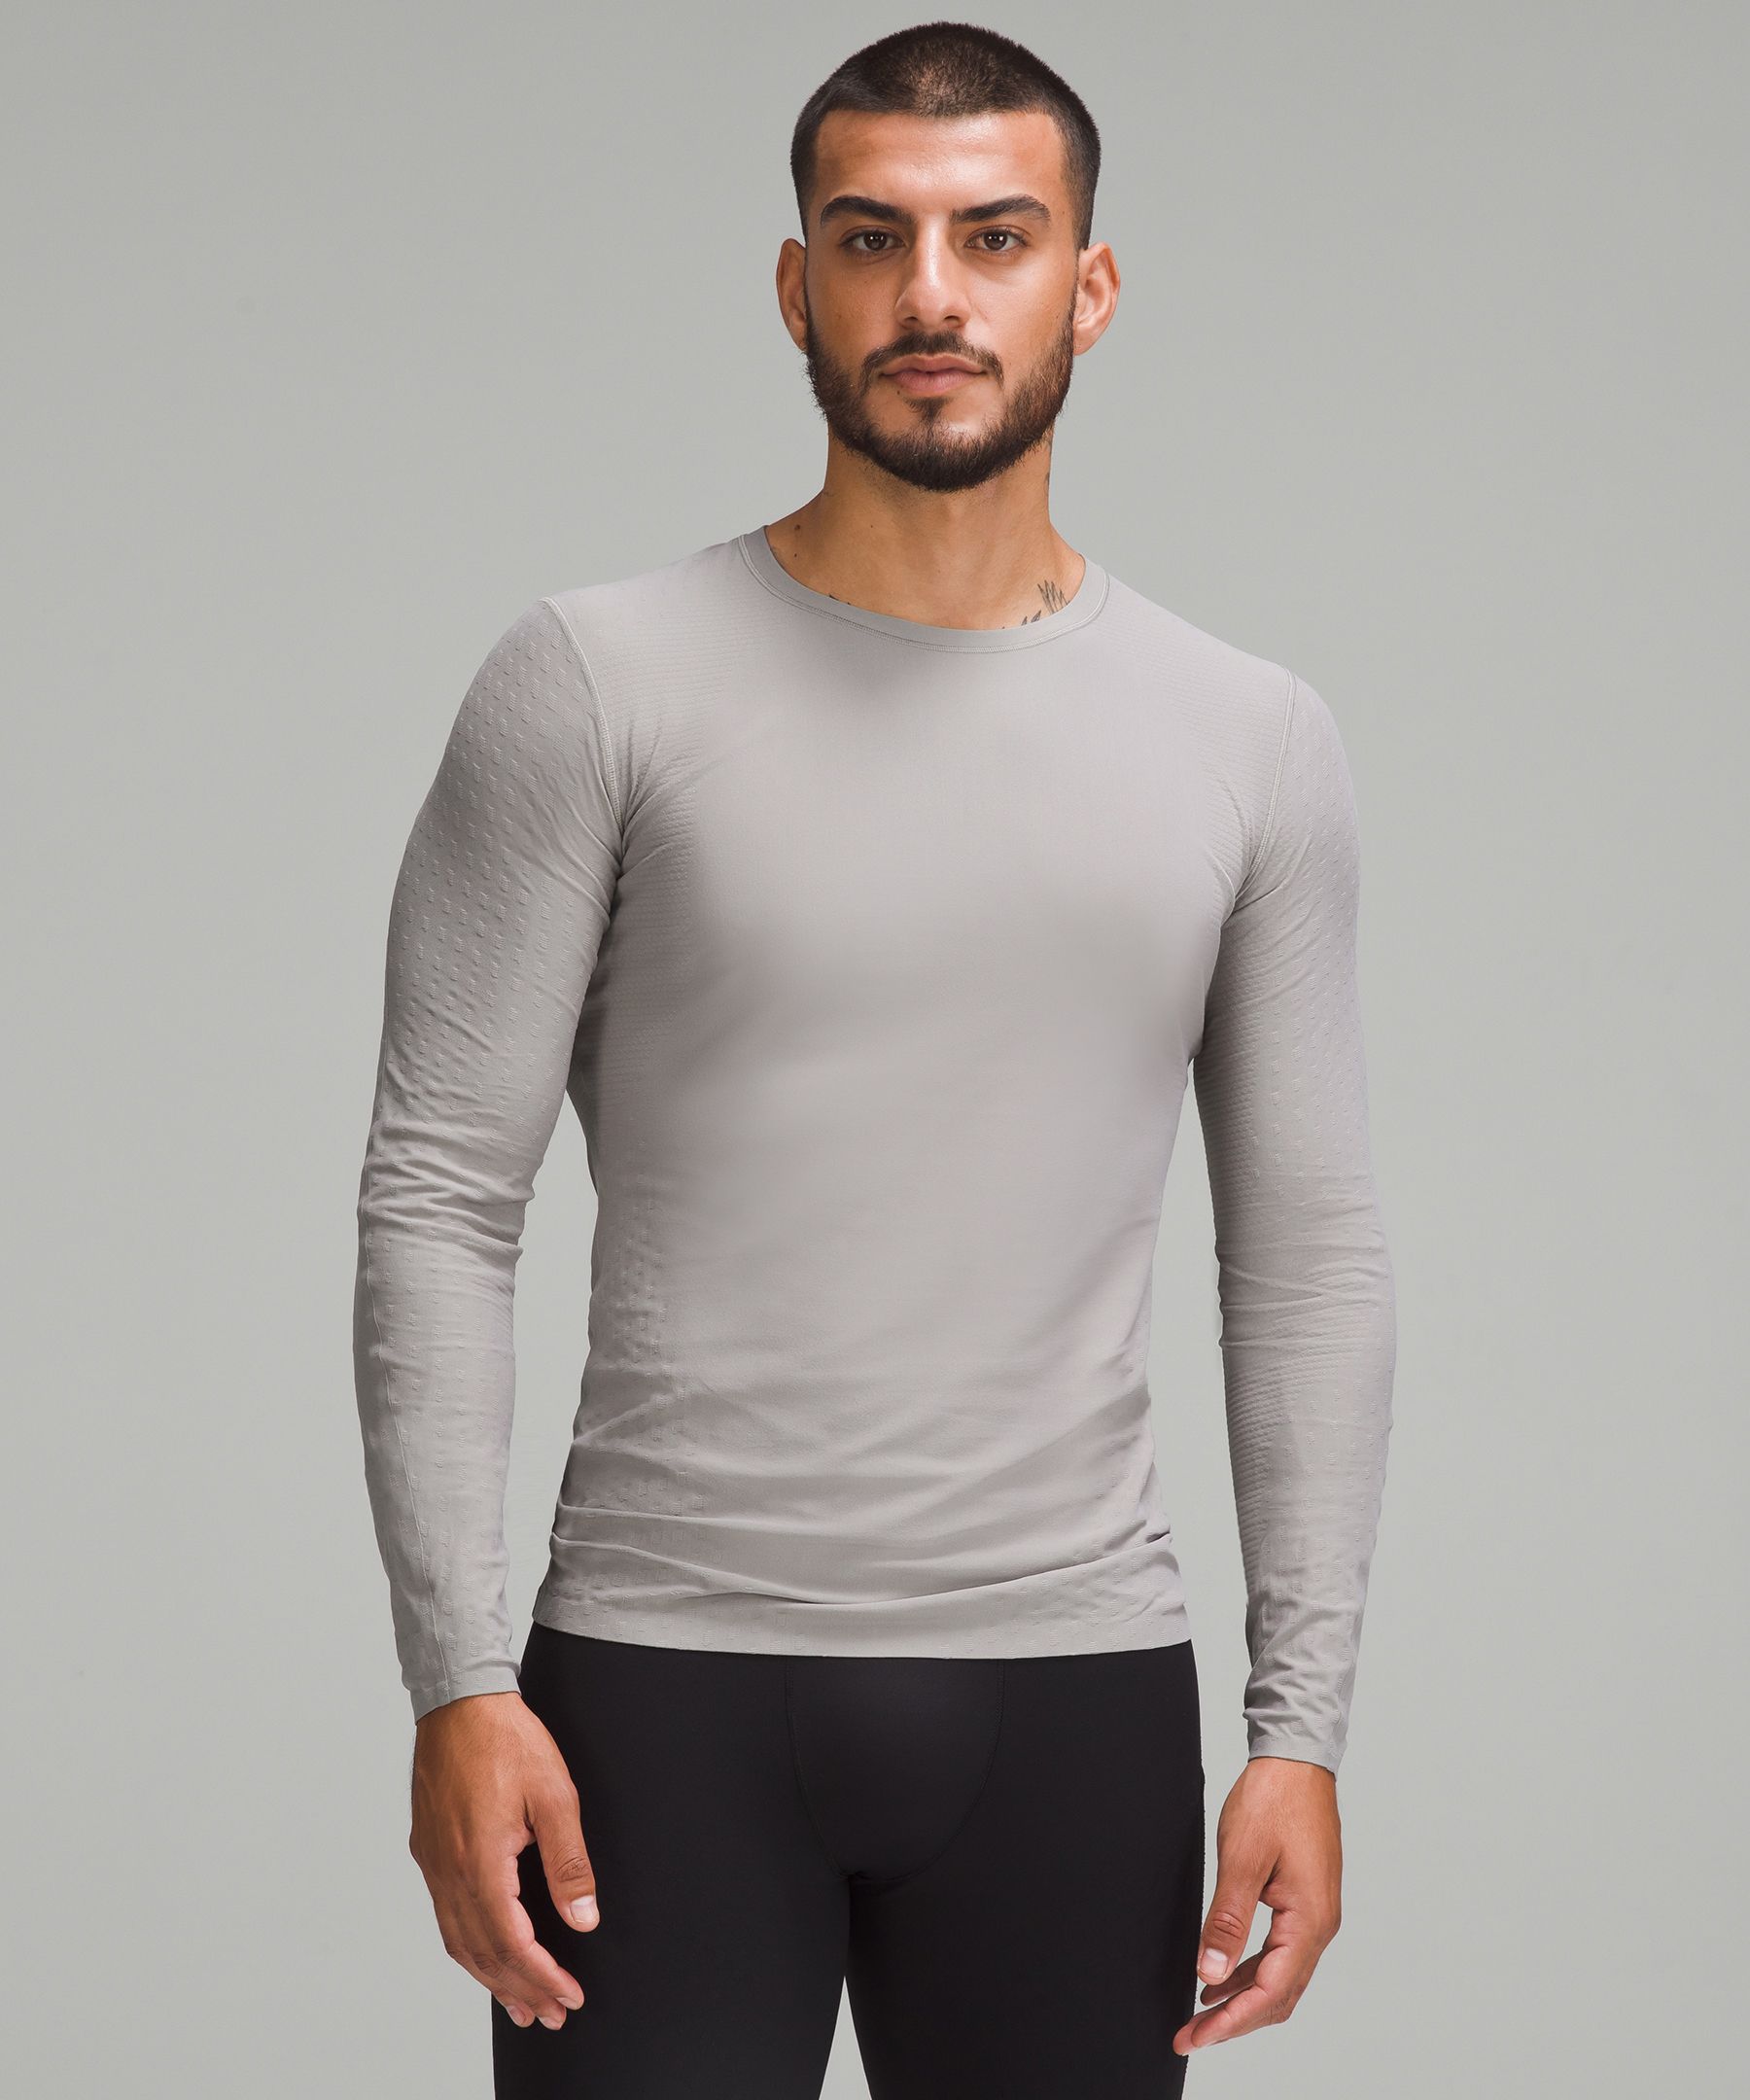 SenseKnit Running Long-Sleeve Shirt | Men's Long Sleeve Shirts ...